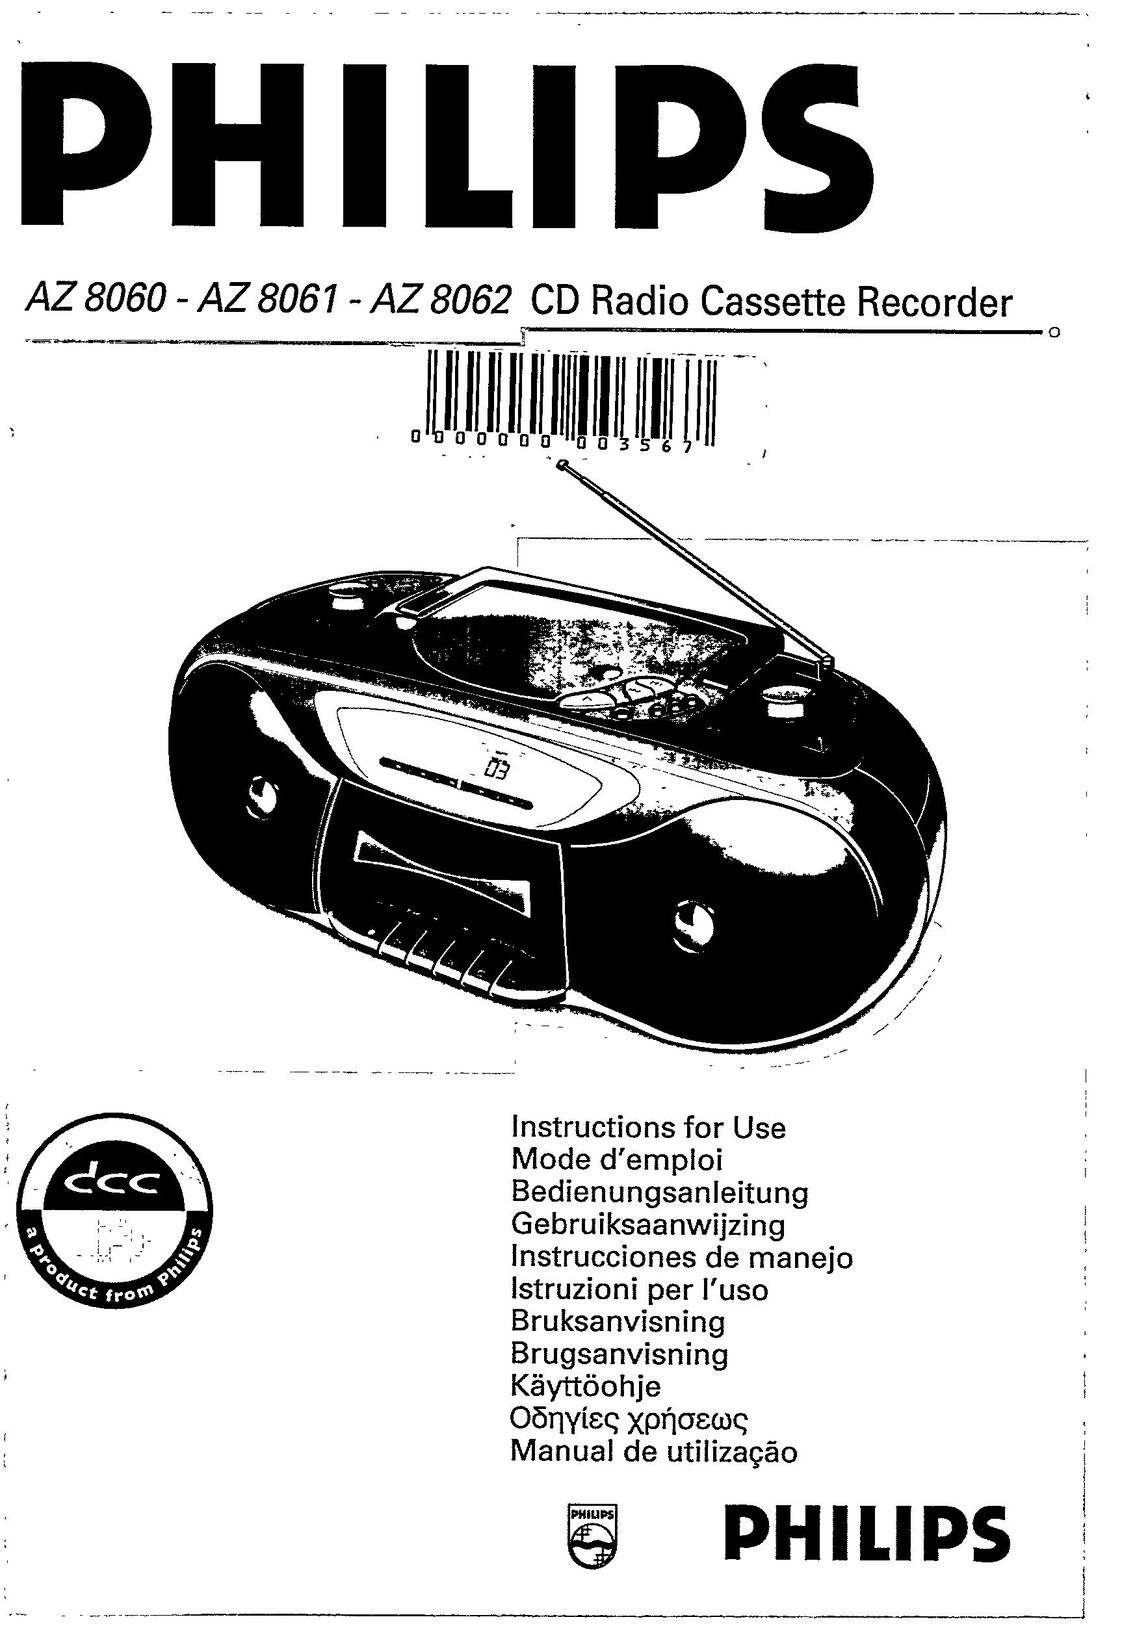 Magnavox AZ 8060 CD Player User Manual